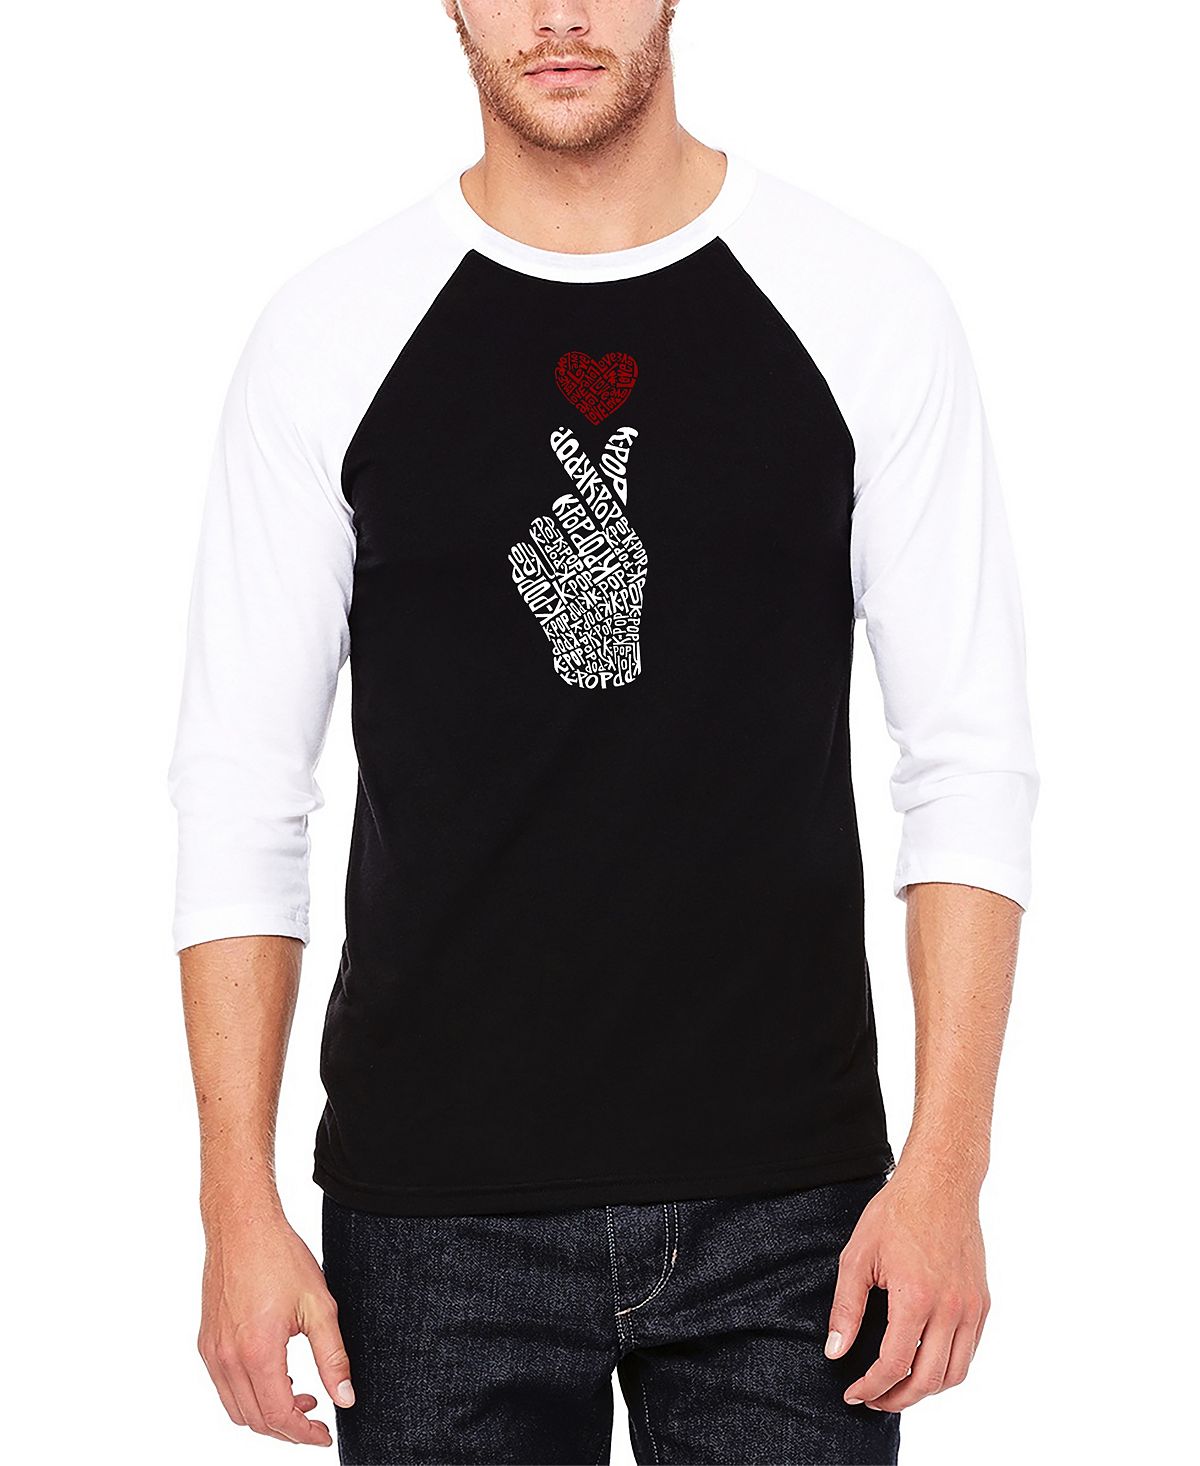 Мужская бейсбольная футболка реглан с рукавом 3/4 k-pop word art футболка LA Pop Art, черно-белый набор значков k pop